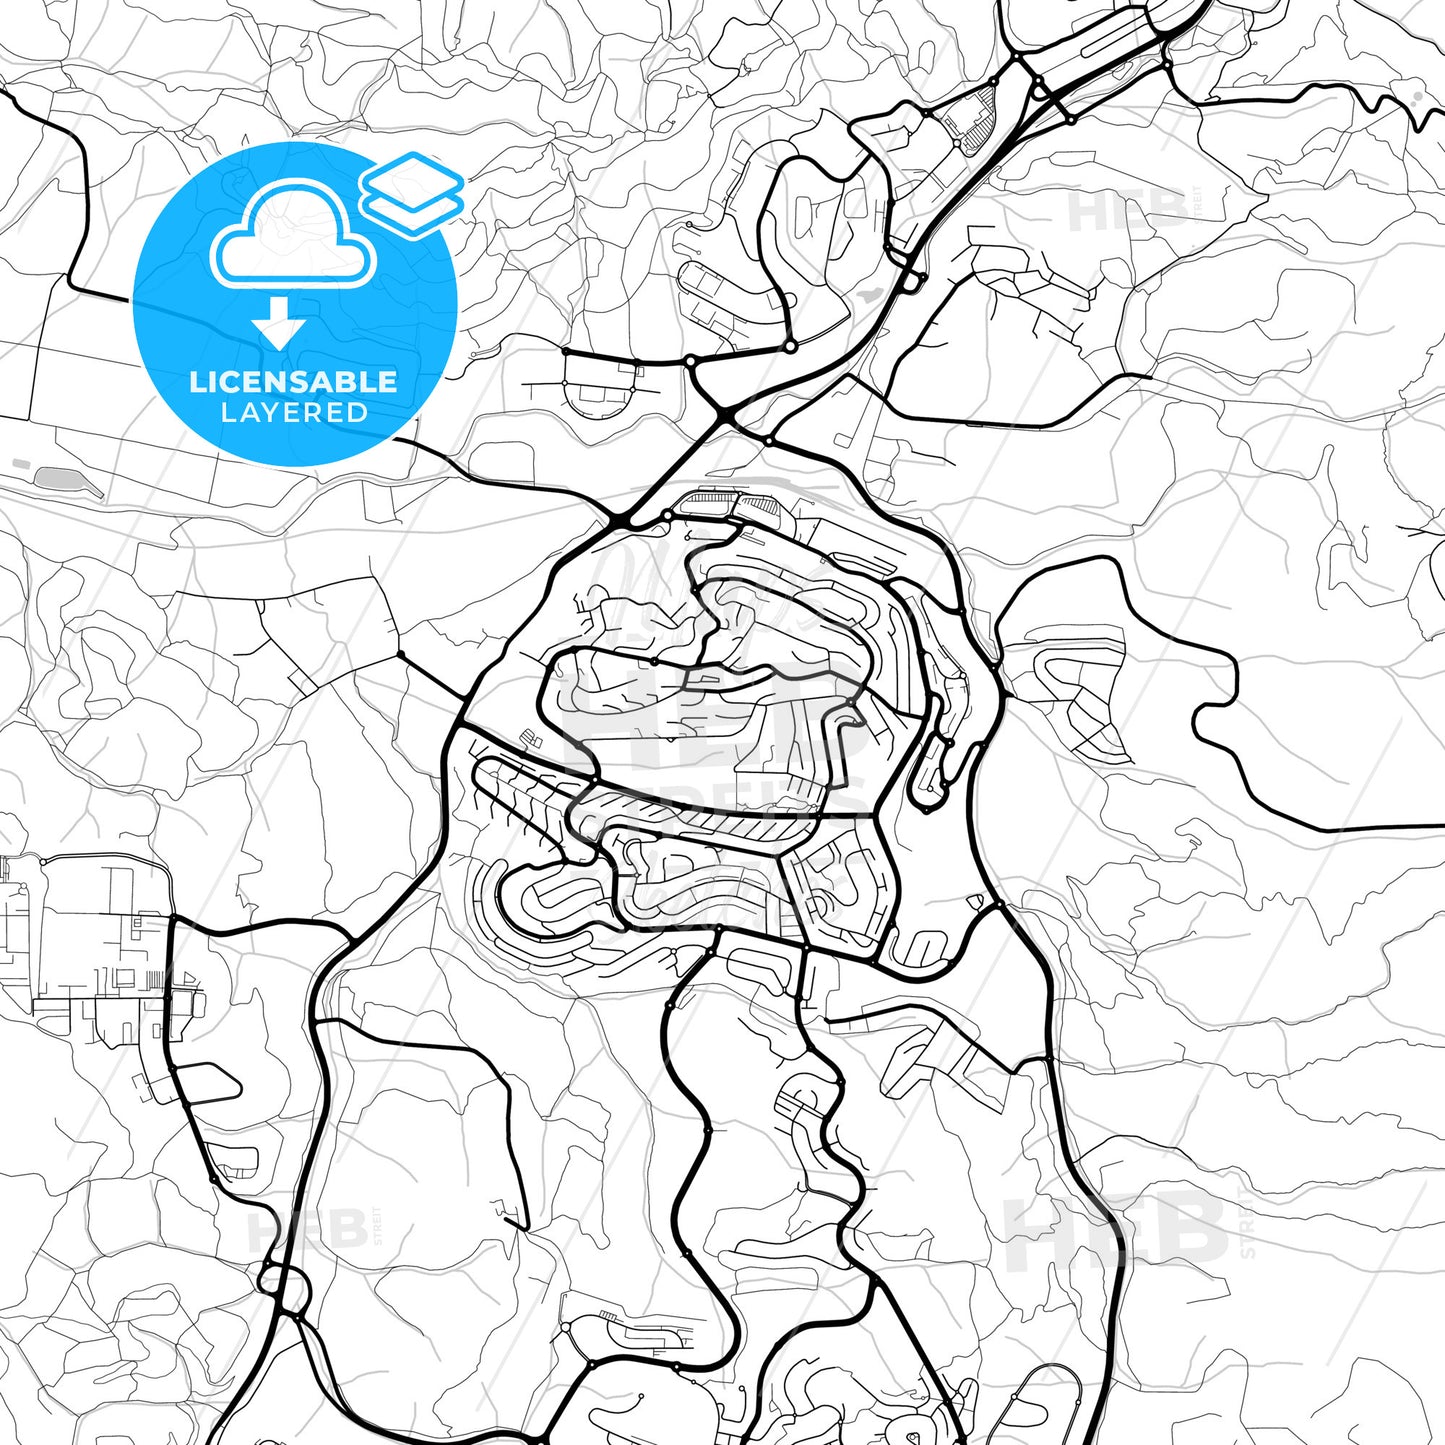 Layered PDF map of Beit Shemesh, Jerusalem, Israel